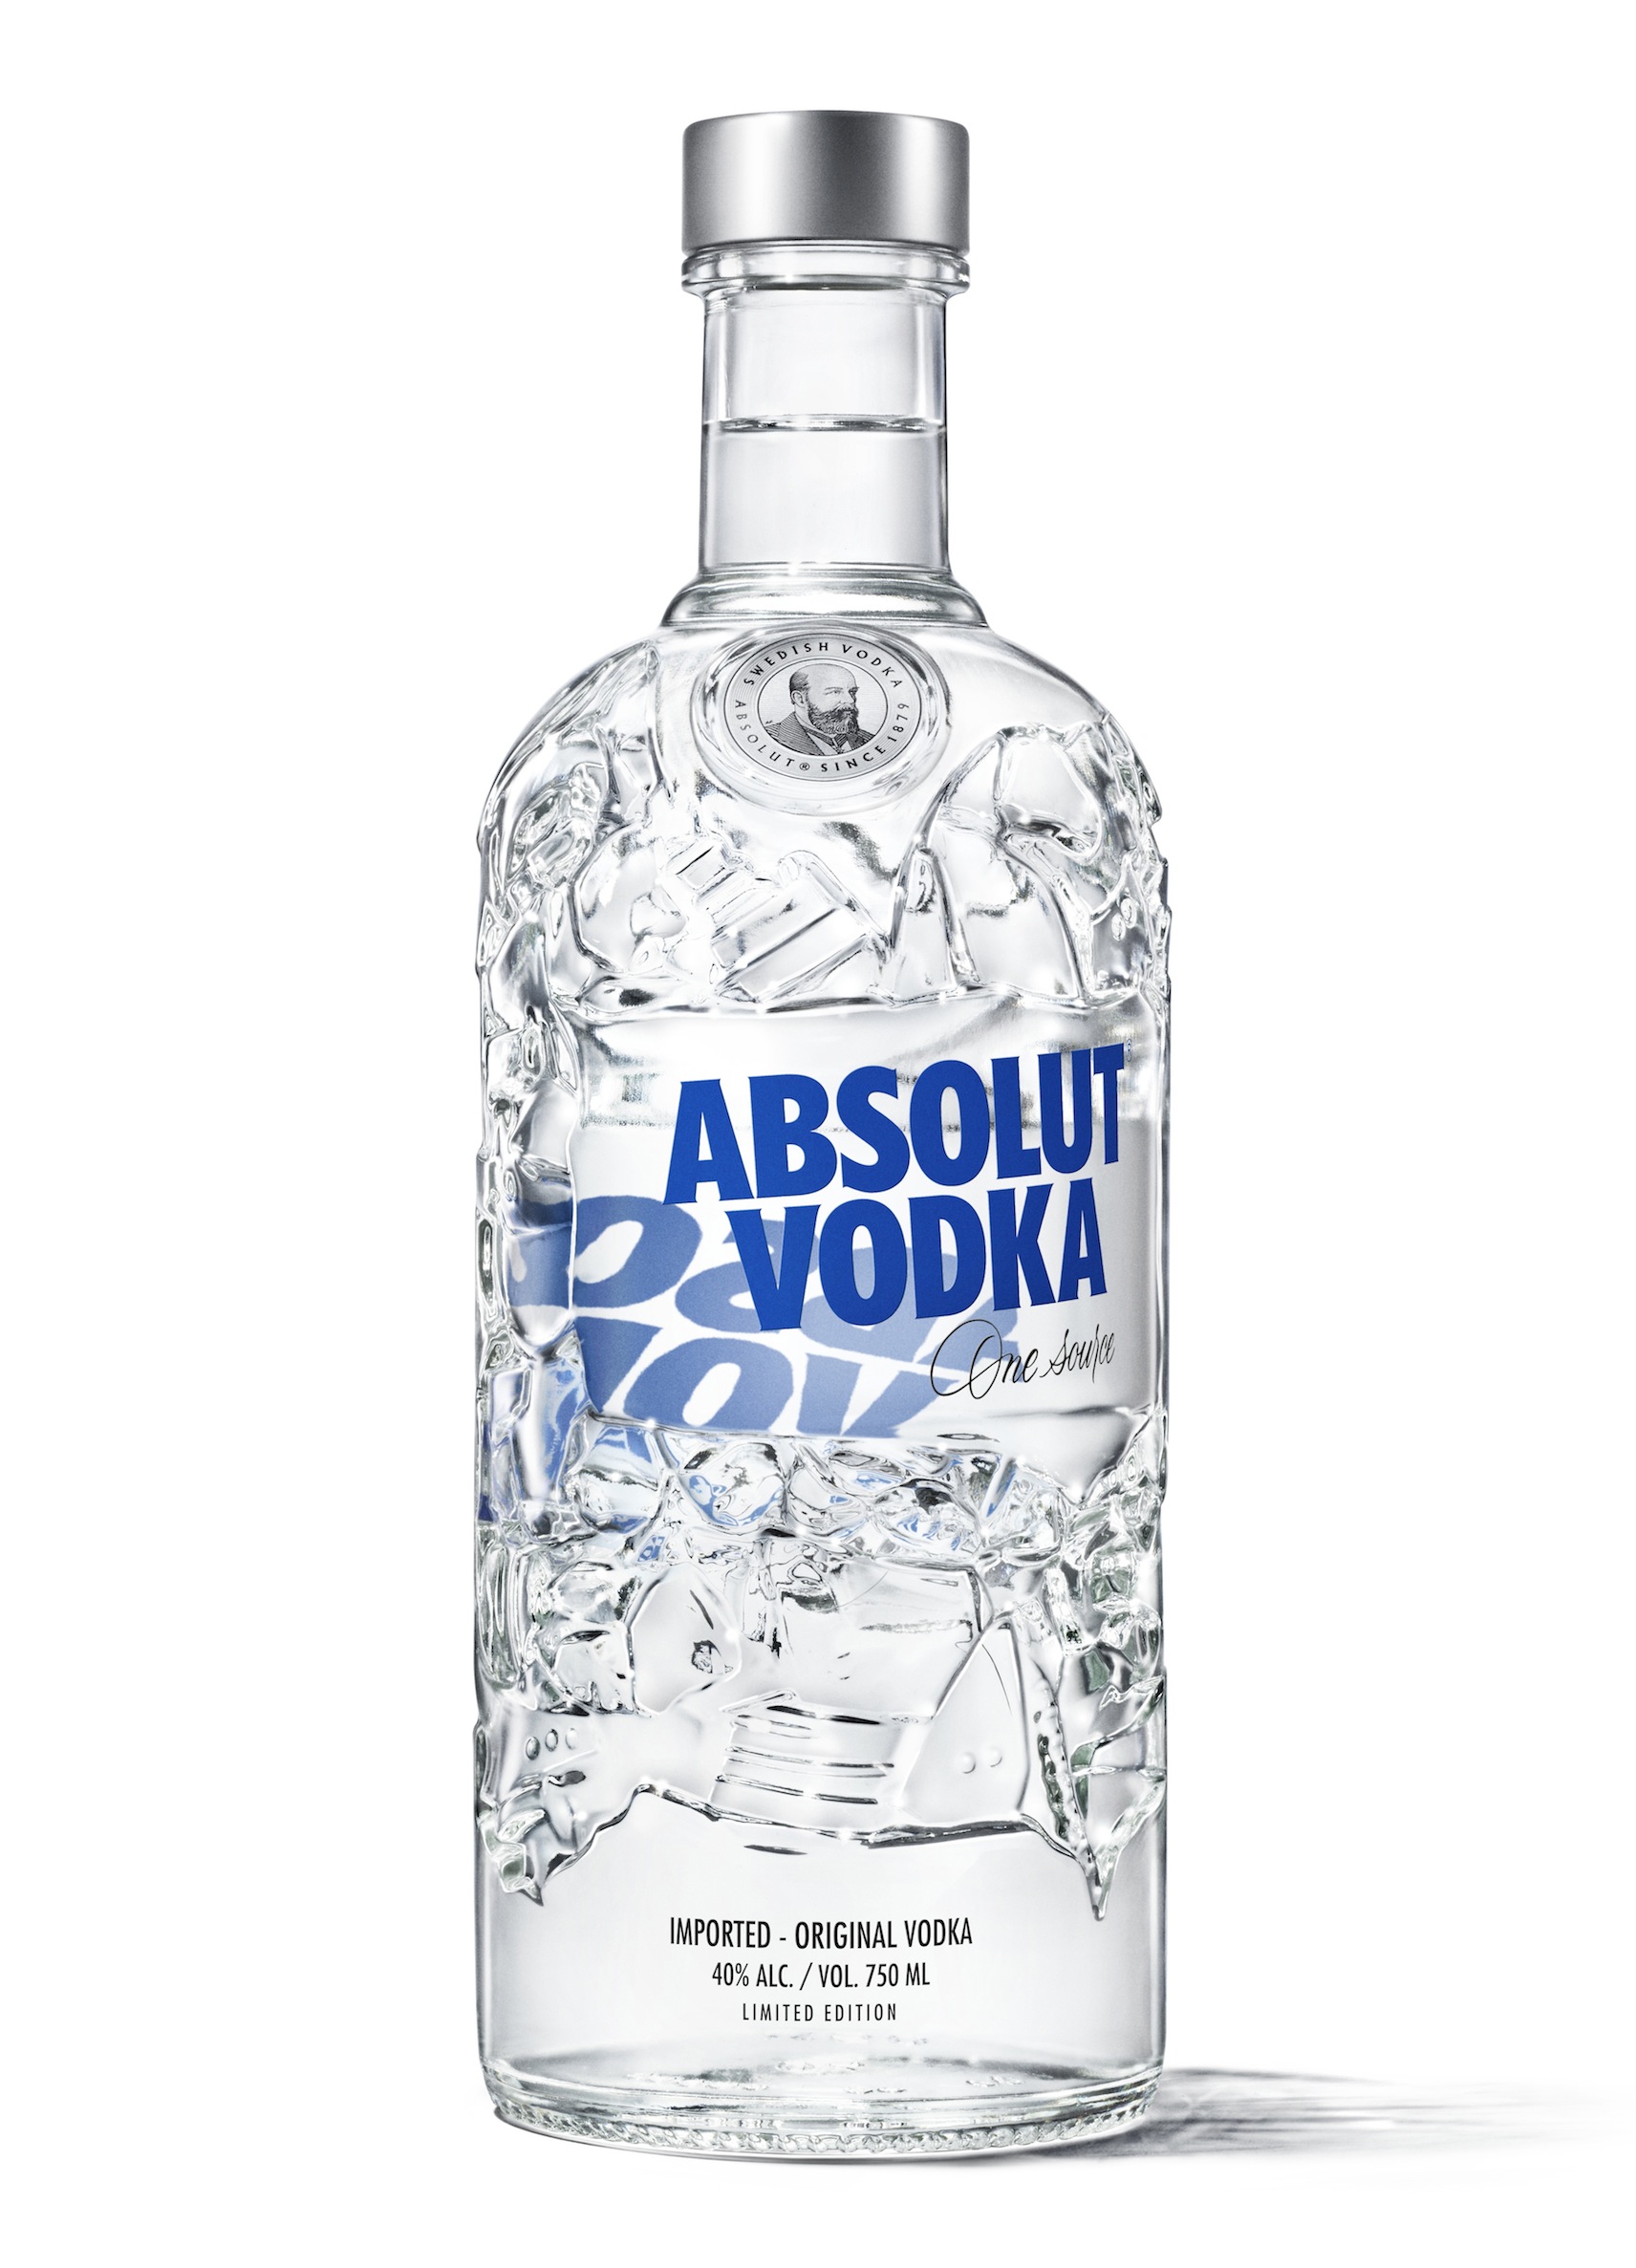 プレミアムウオッカ「アブソルート」が、サステナビリティがテーマのデザインボトルを数量限定で販売。